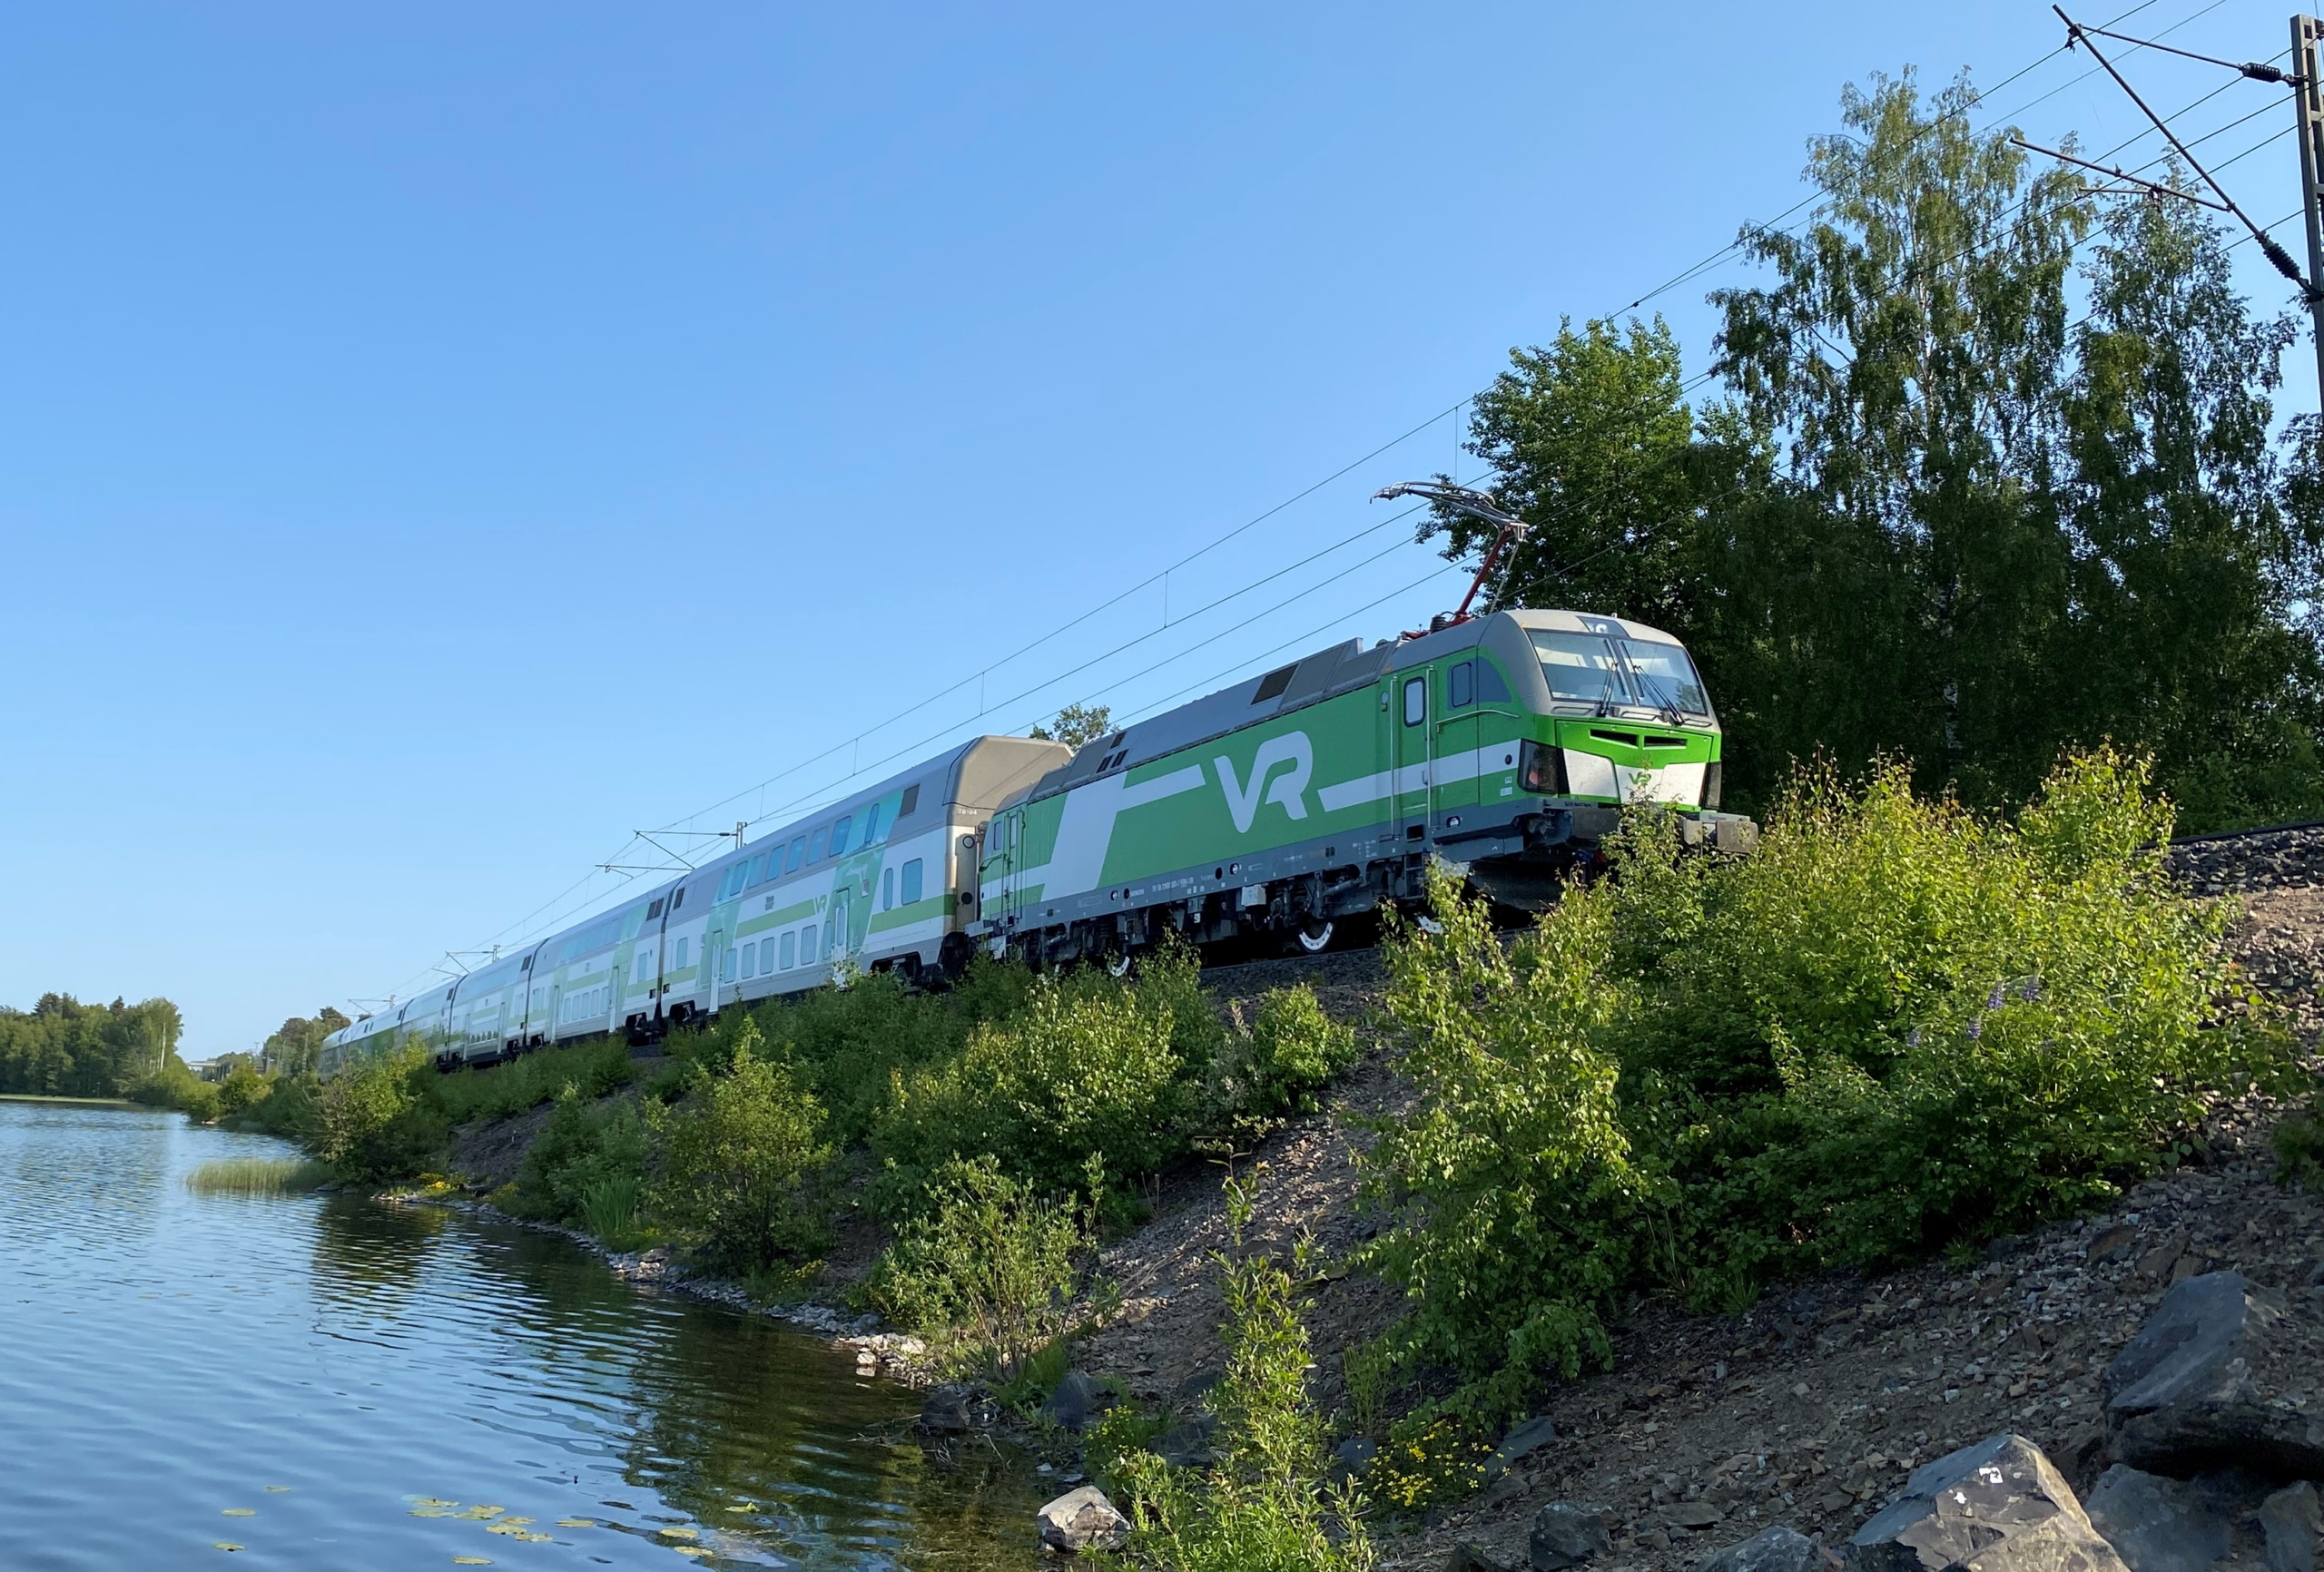 Lielahden-Lakialan kaksoisraide merkittävä junaliikenteen kehittämiselle